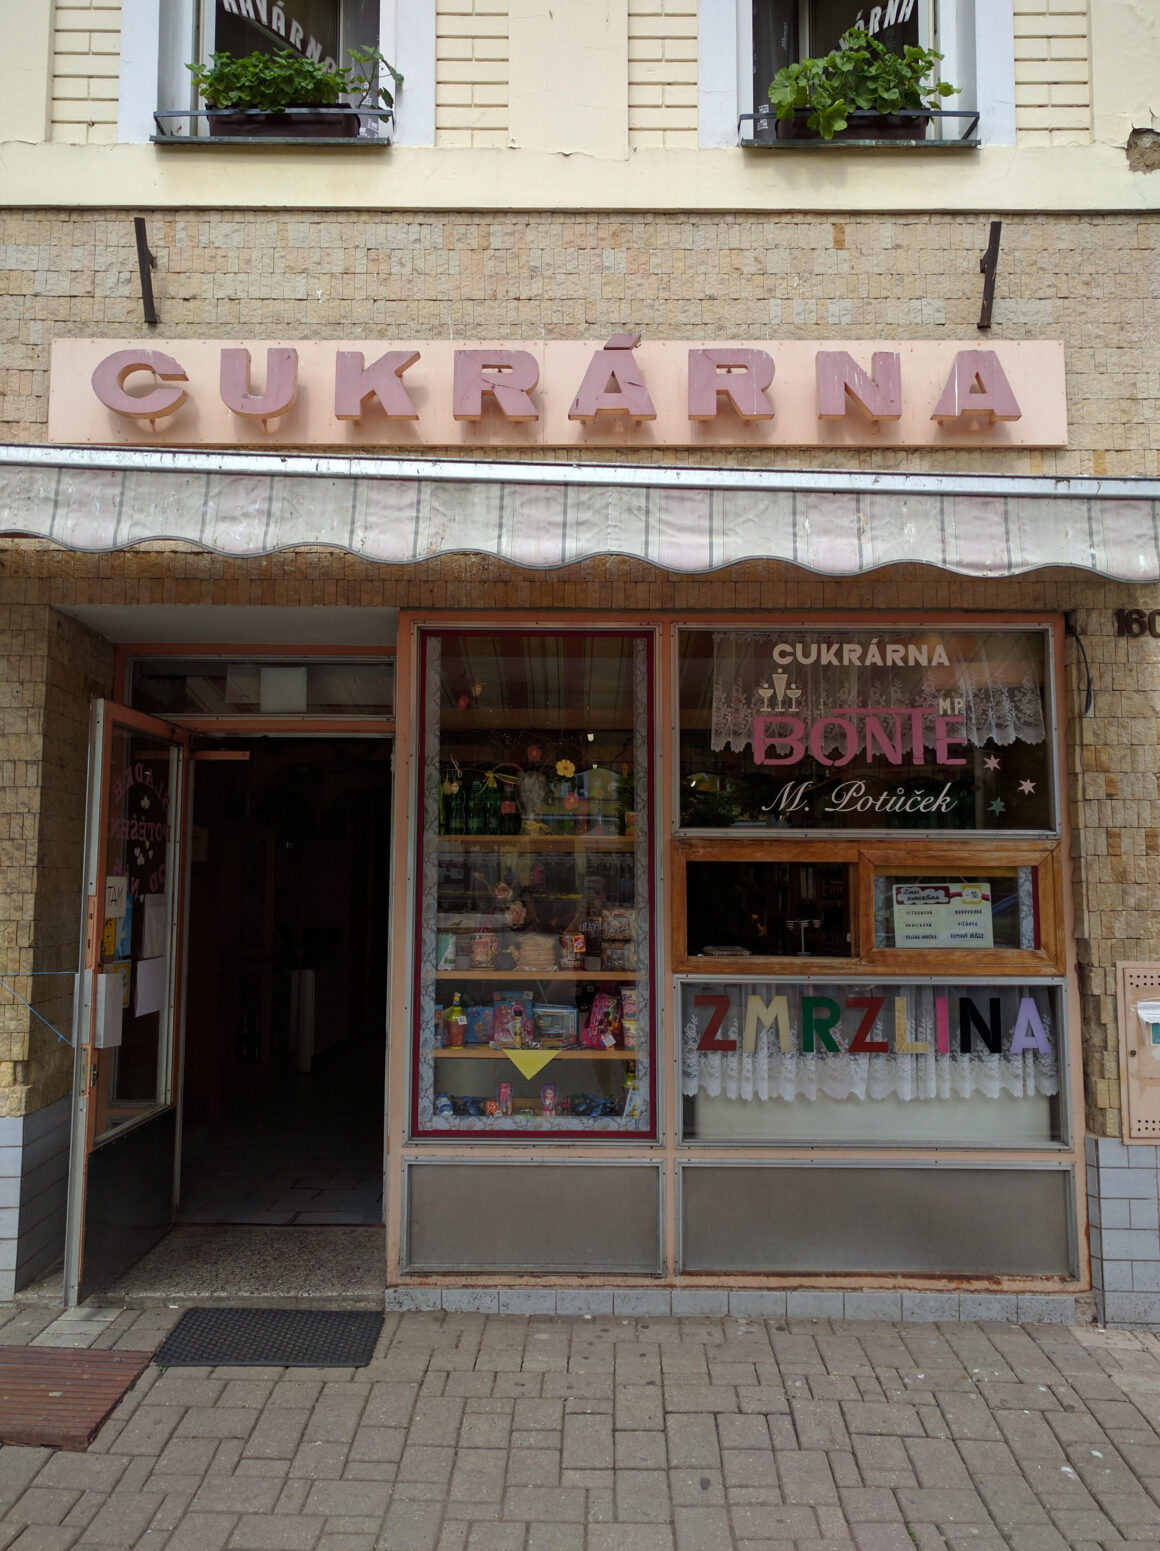 A cukrarna, or bakery, in Benesov, Czech Republic